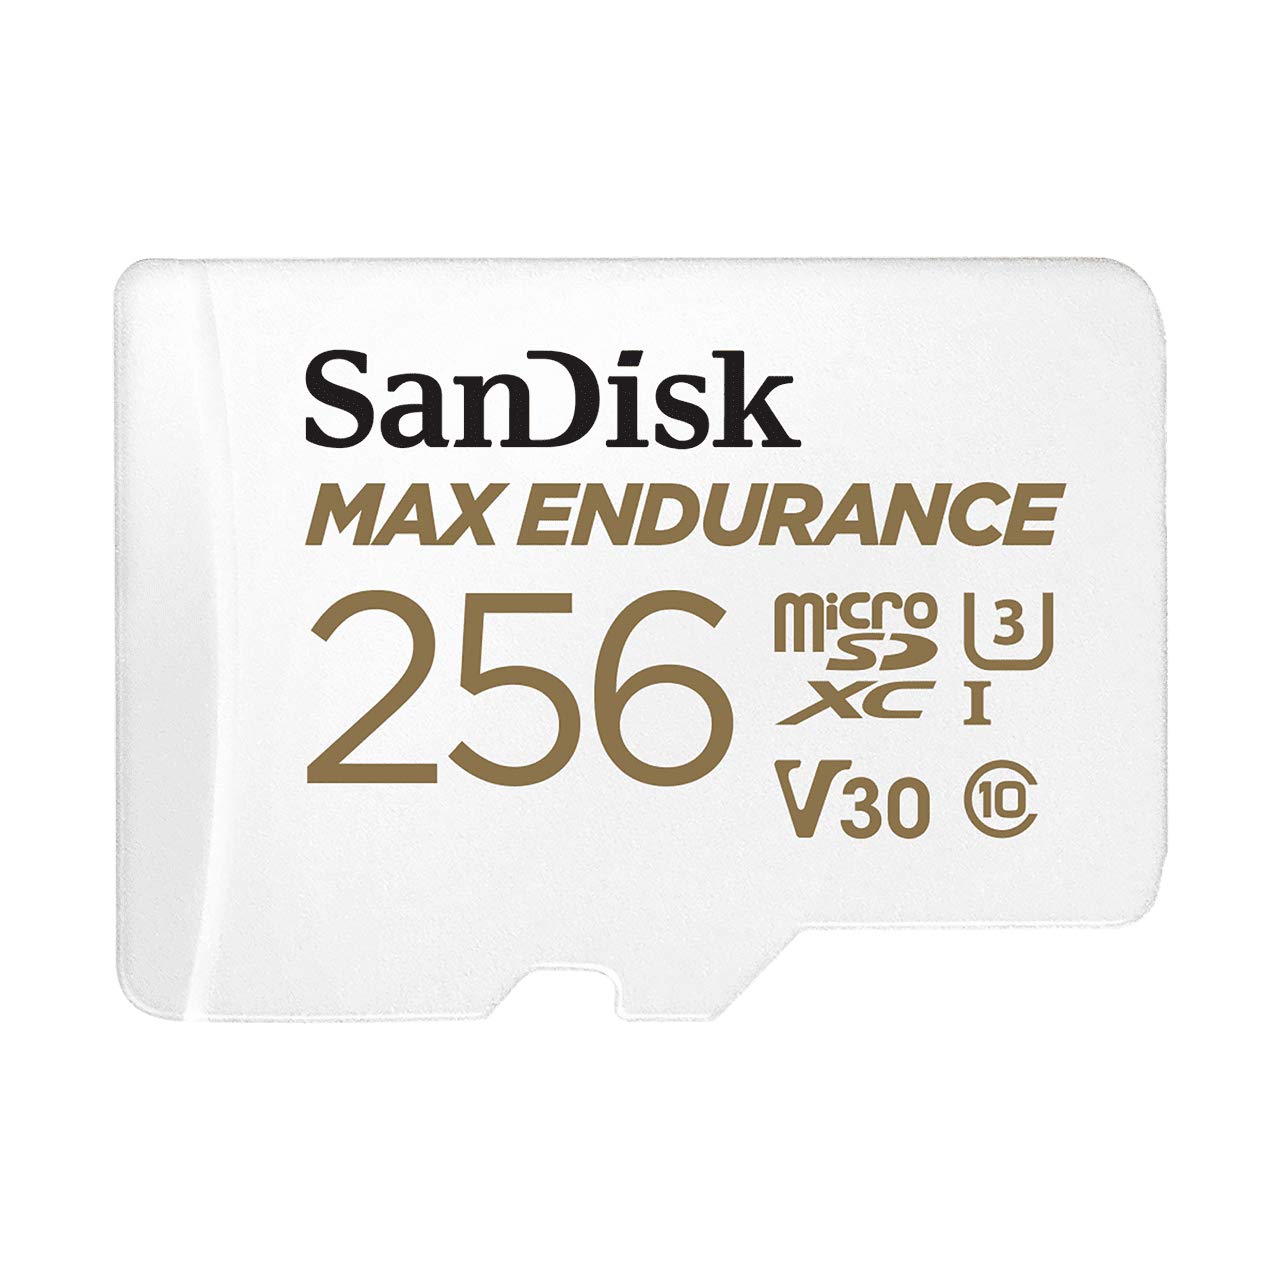 SanDisk MAX ENDURANCE microSDXC Speicherkarte mit Adapter 256 GB (Für Dashcams und Heimüberwachungssysteme,100 MB/s Übertragung, V30, Class 10, U3)